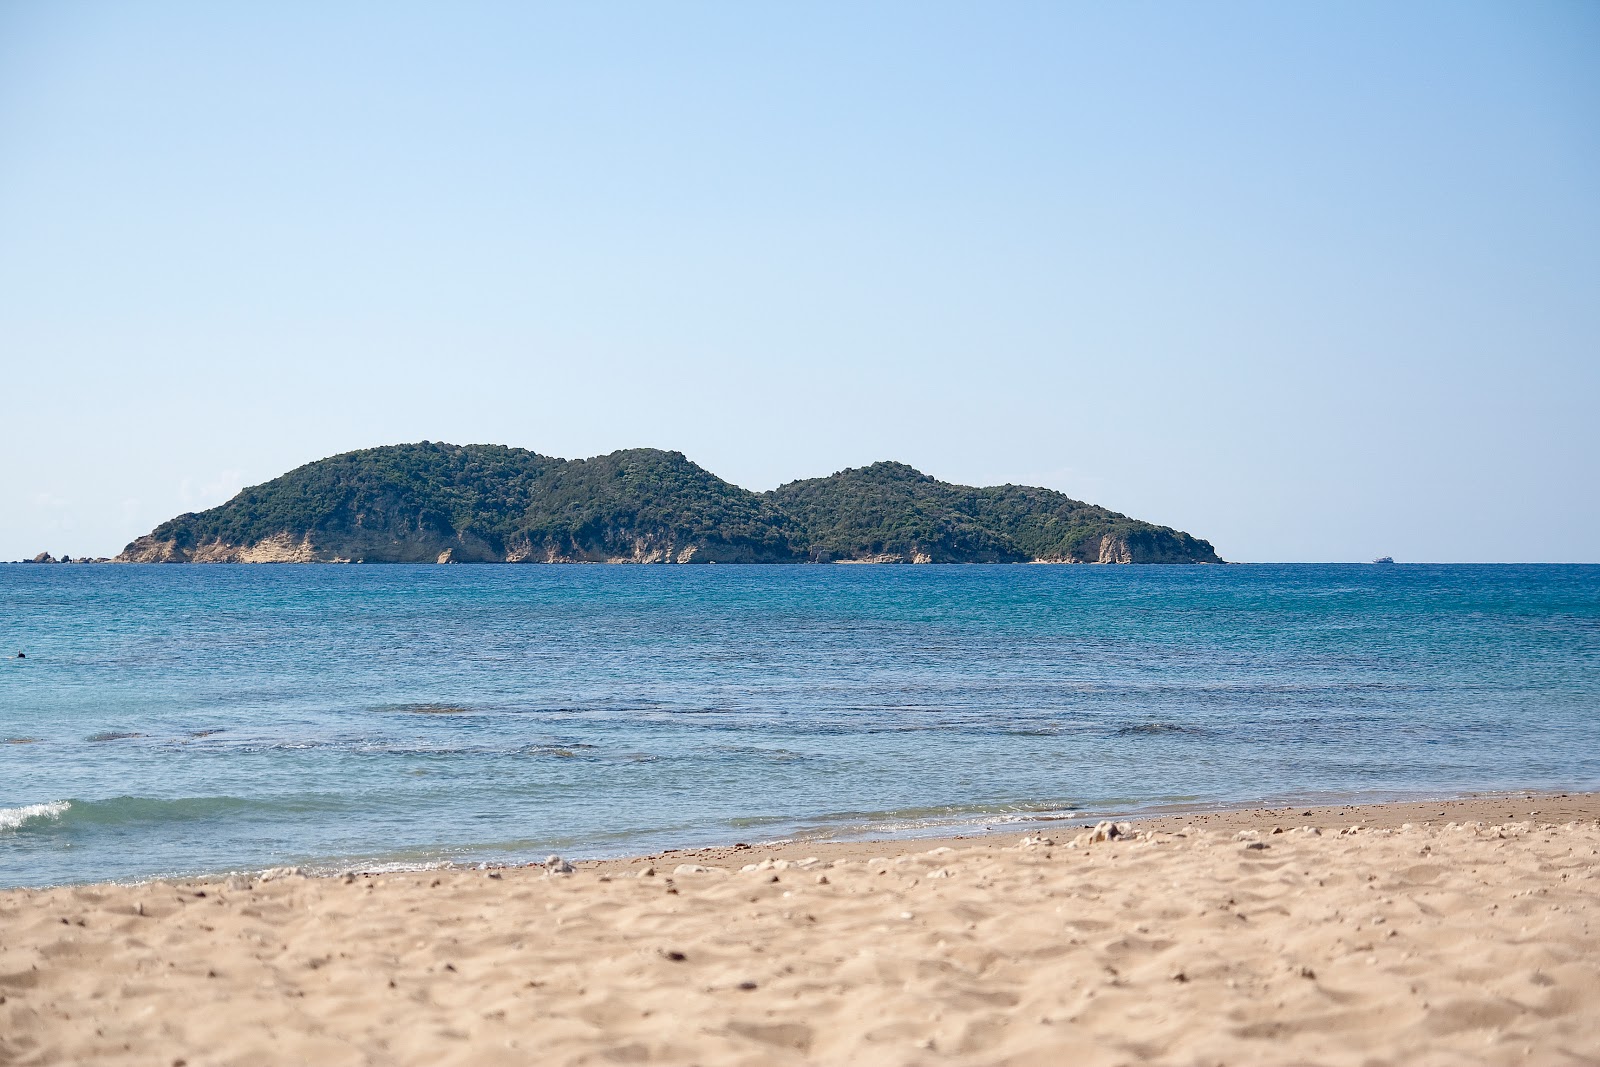 Plaj Dafni'in fotoğrafı doğal alan içinde bulunmaktadır